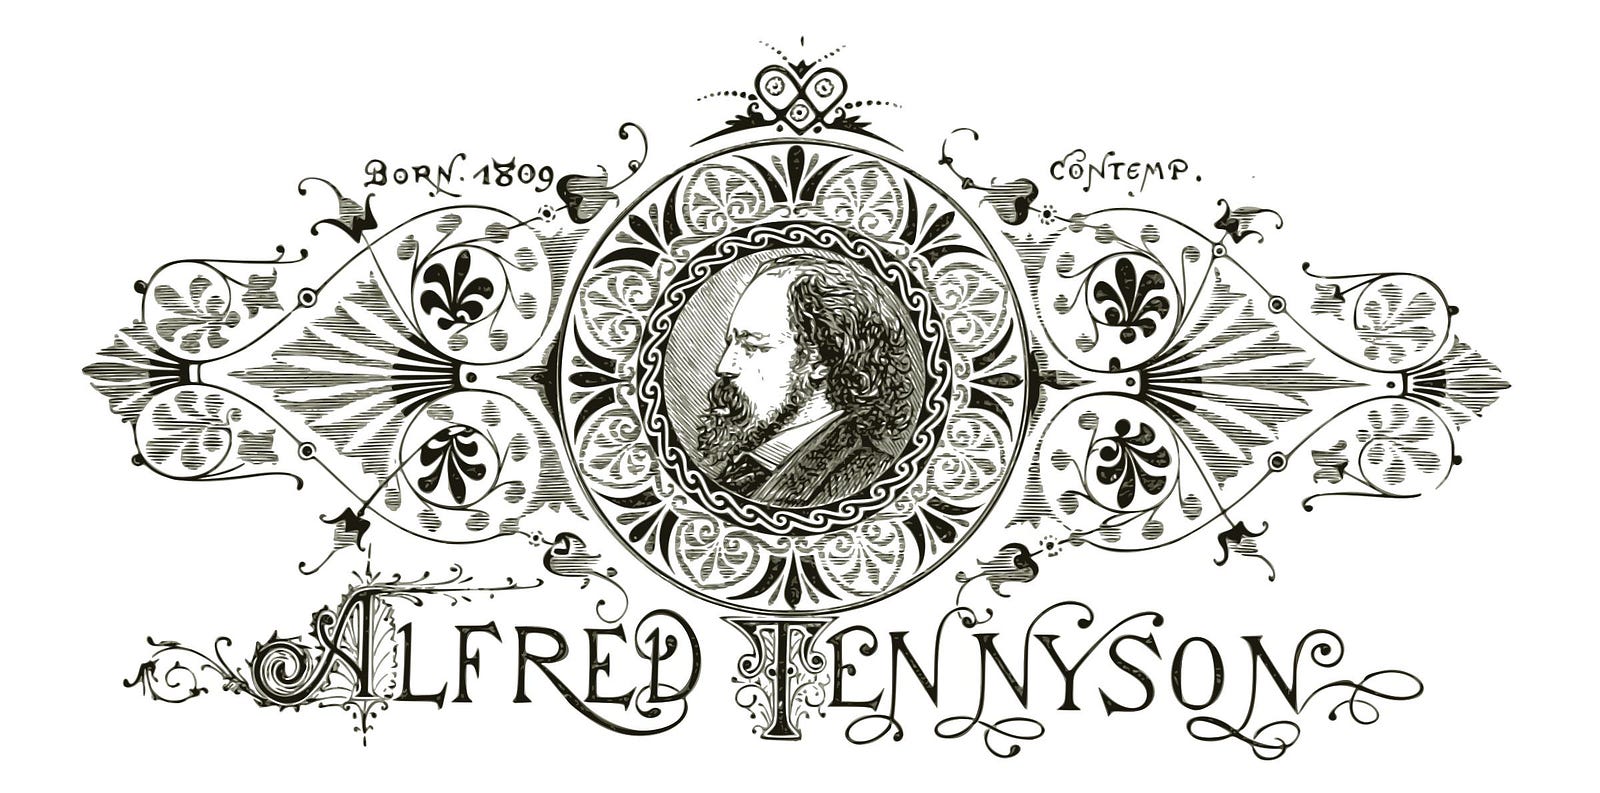 tennyson poems in memoriam